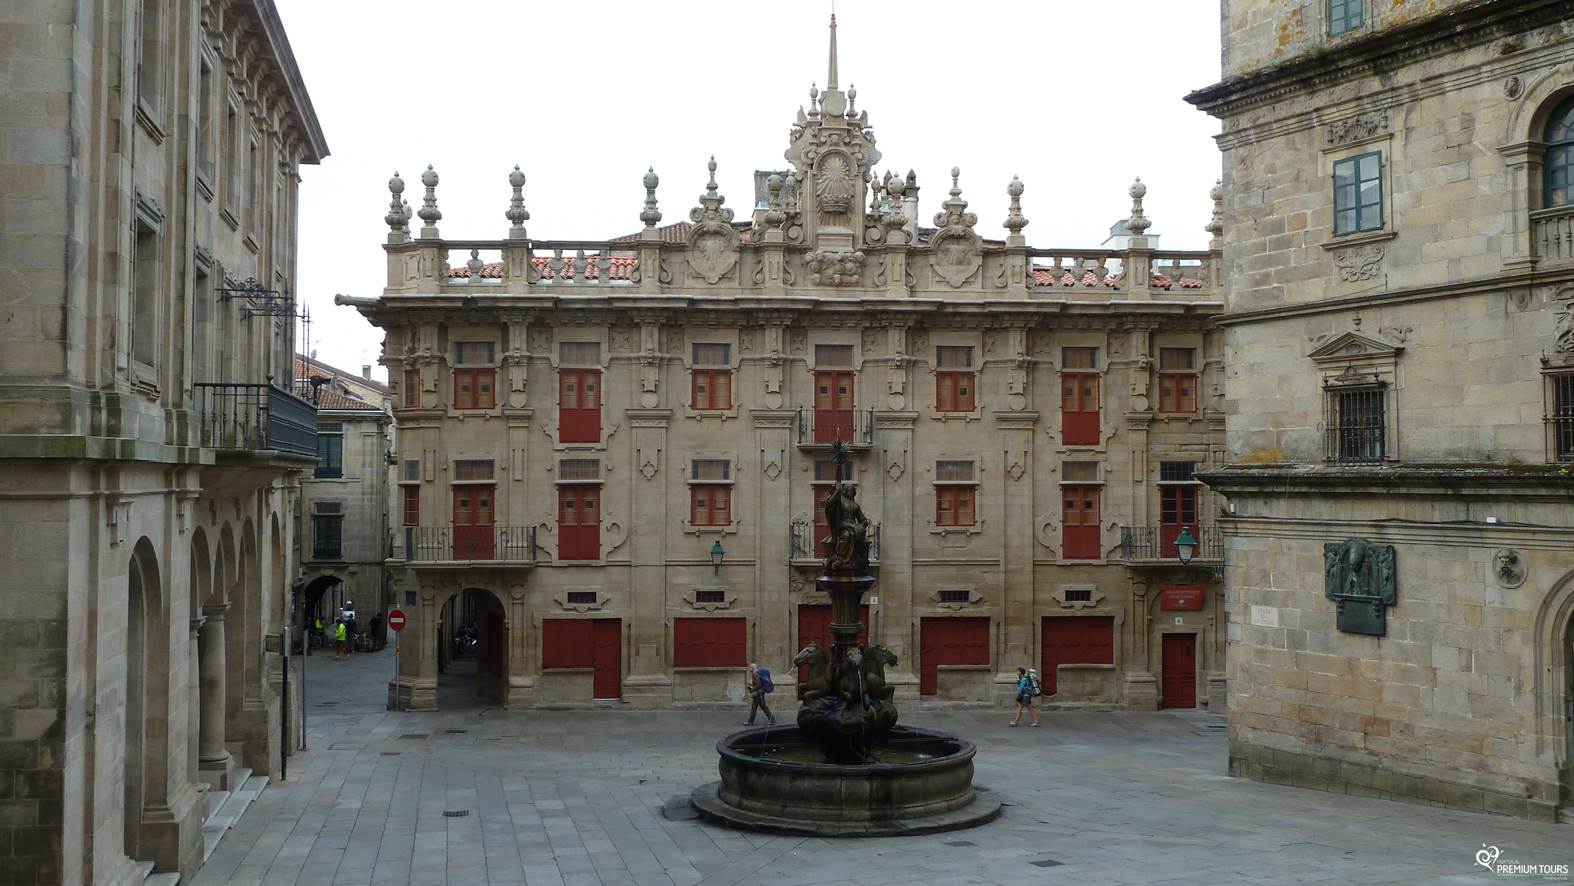 Come feel Santiago de Compostela | Portugal Premium Tours1574 x 886